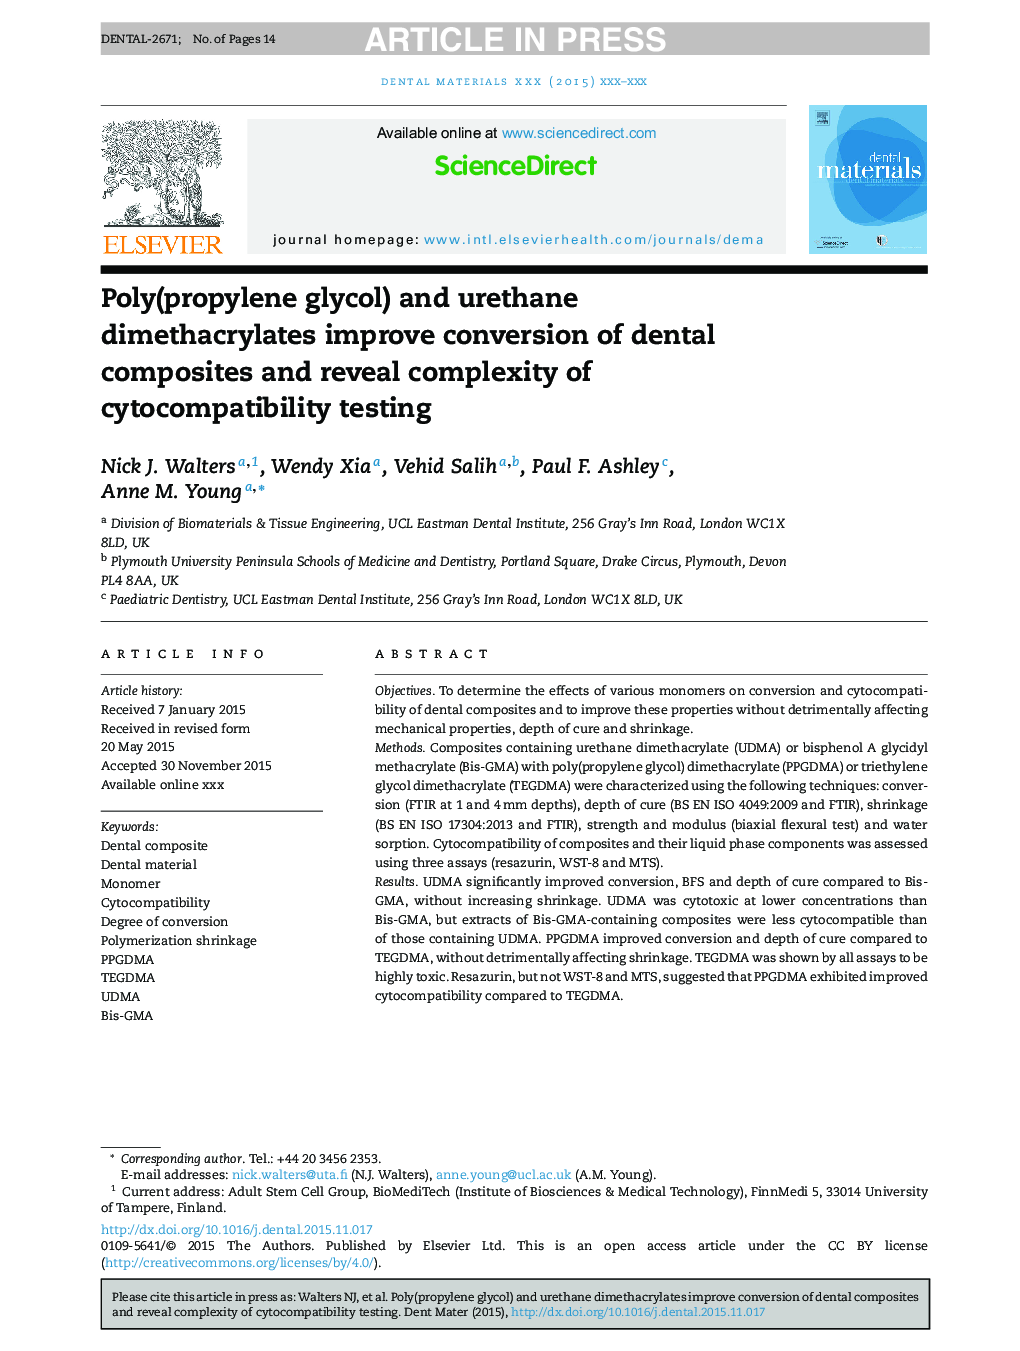 پلی (پروپیلن گلیکول) و یورتان دی متیکریلات باعث بهبود تبدیل کامپوزیت های دندانی و نشان دادن پیچیدگی آزمایش های سیتوپلاستیک 